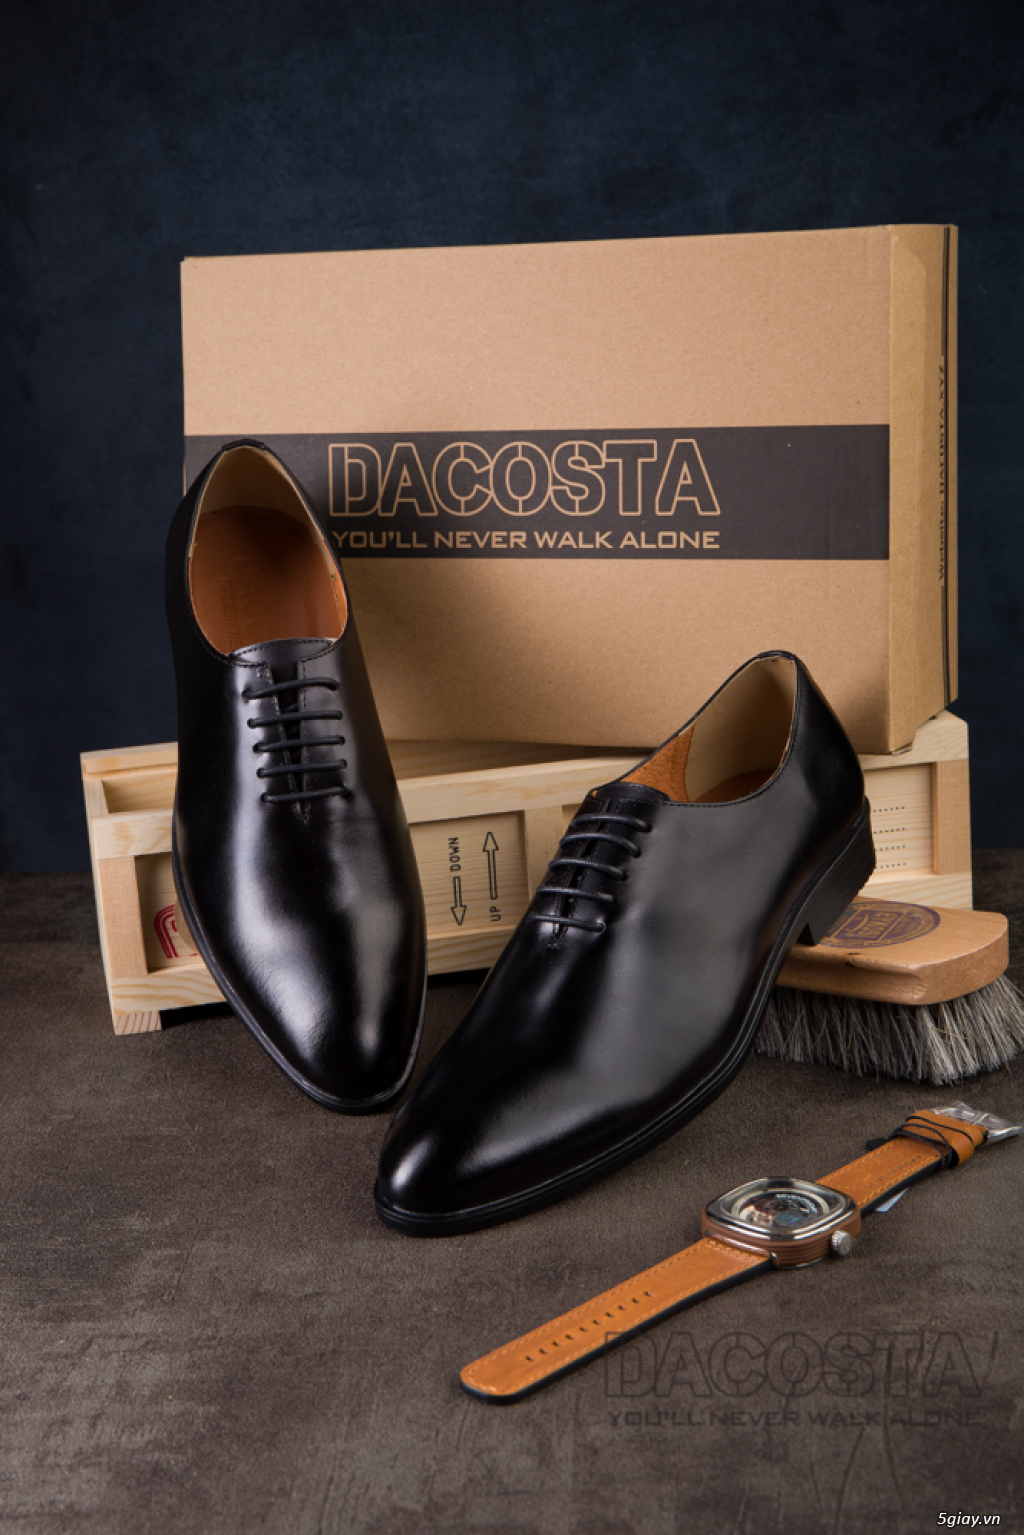 Tiệm Giày Dacosta - Những Mẫu Giày Tây Oxford Hot Nhất 2019 - 22